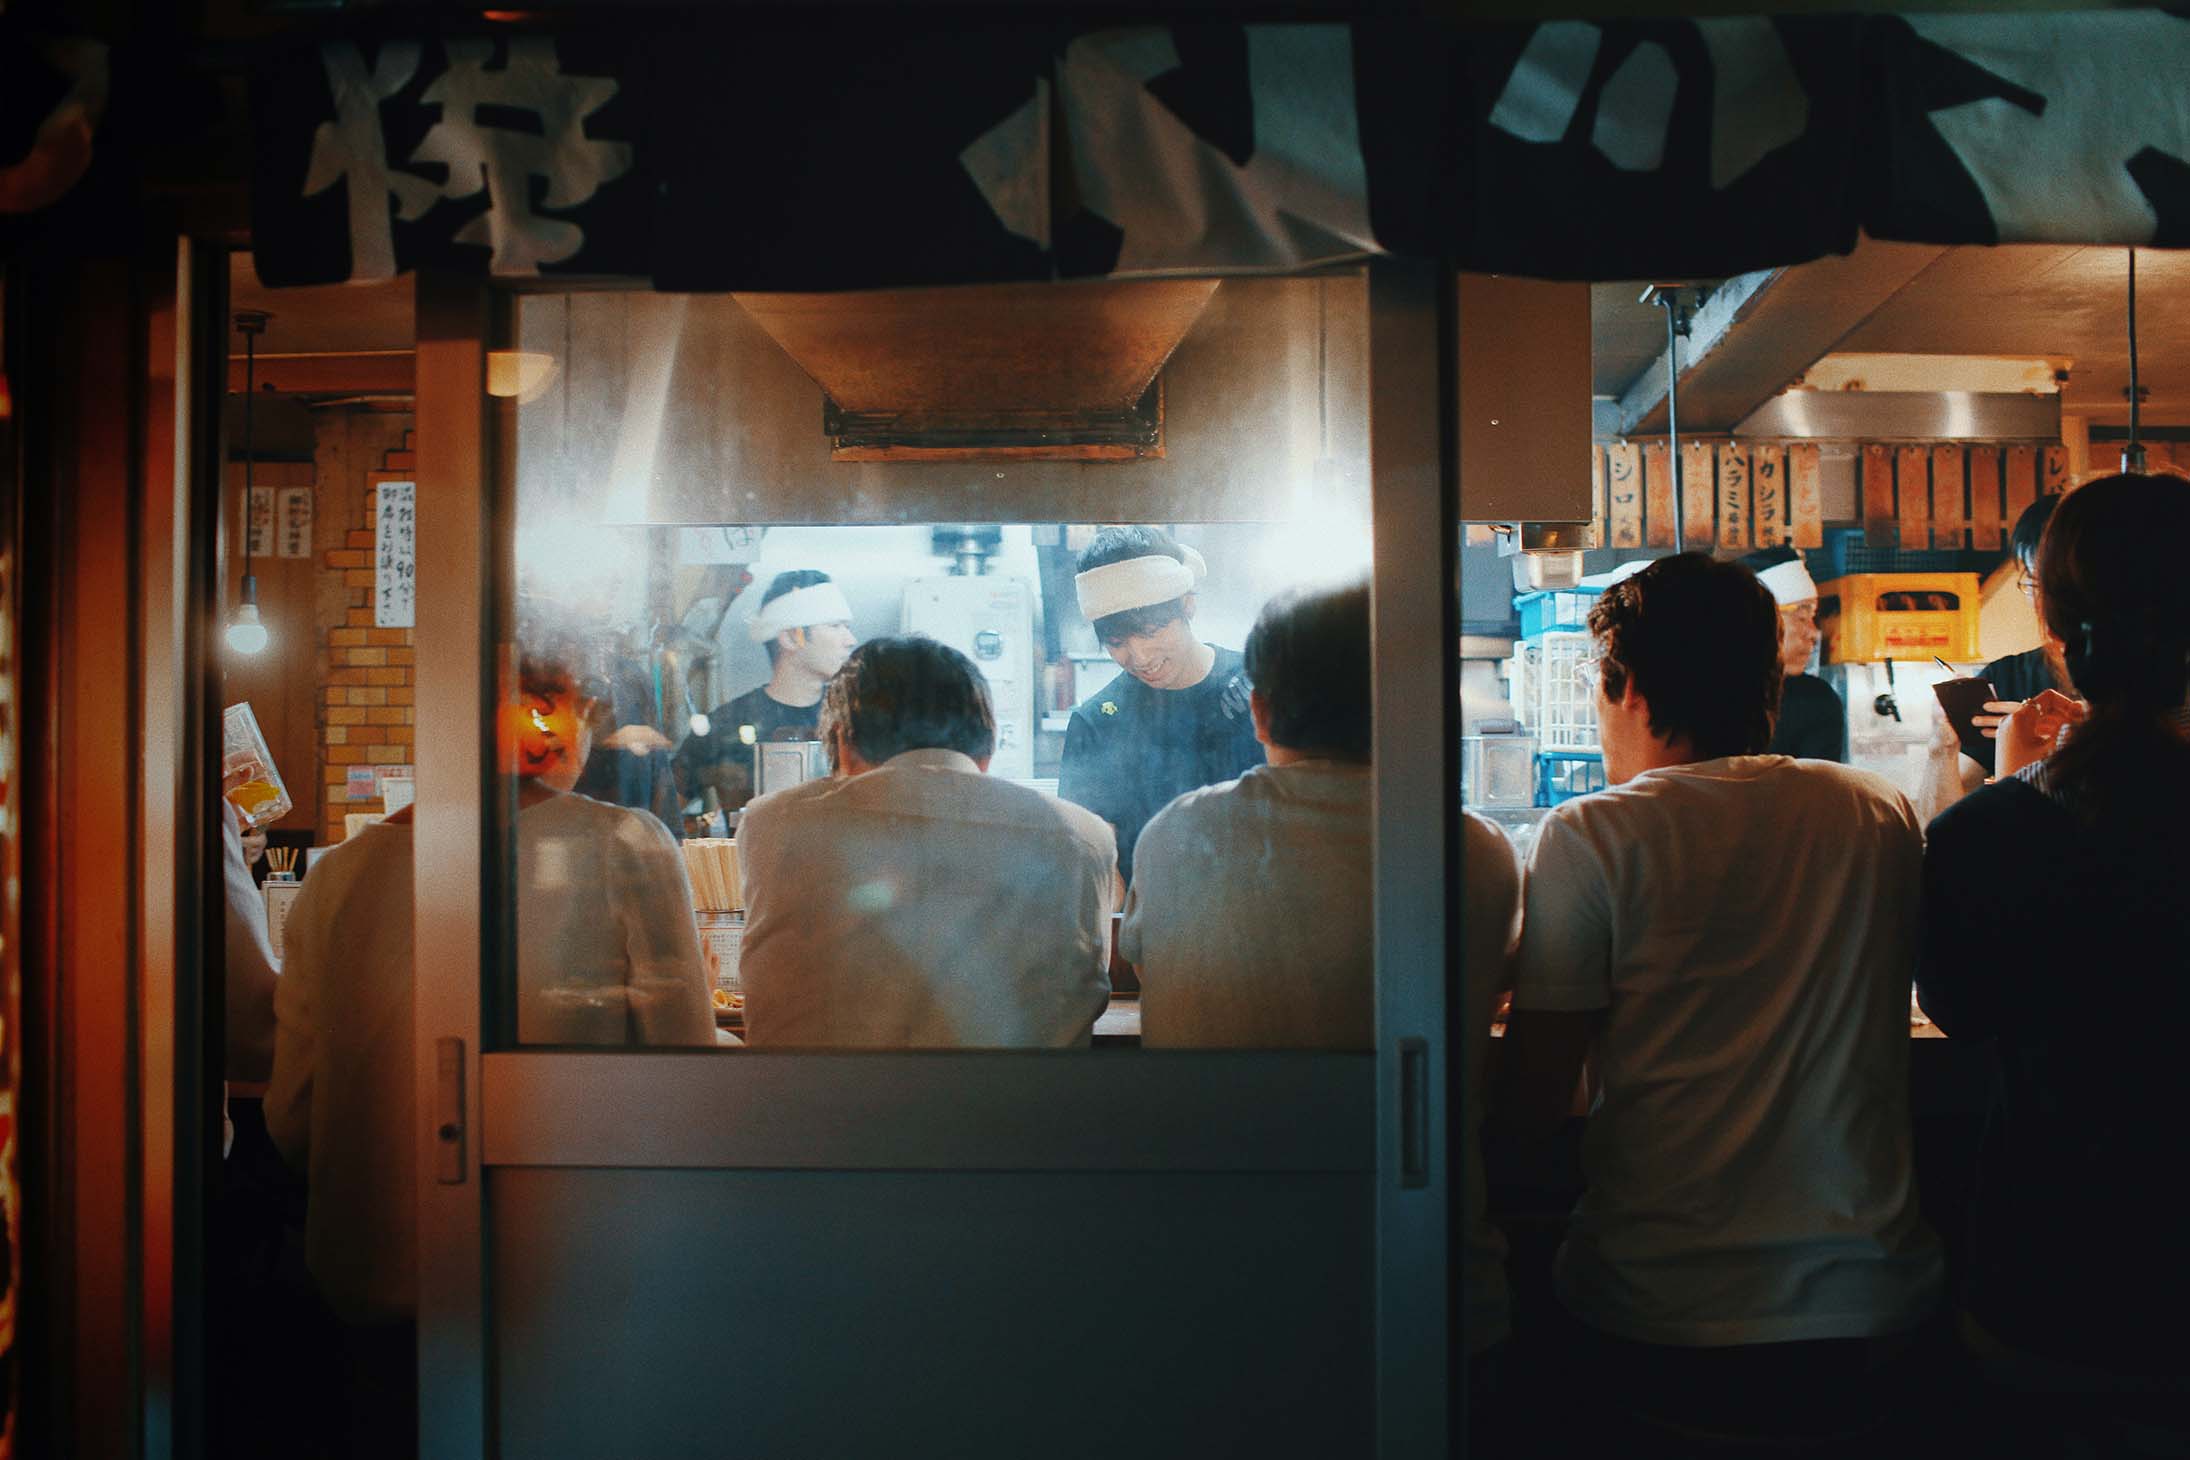 Osaka locals eating at a restaurant.